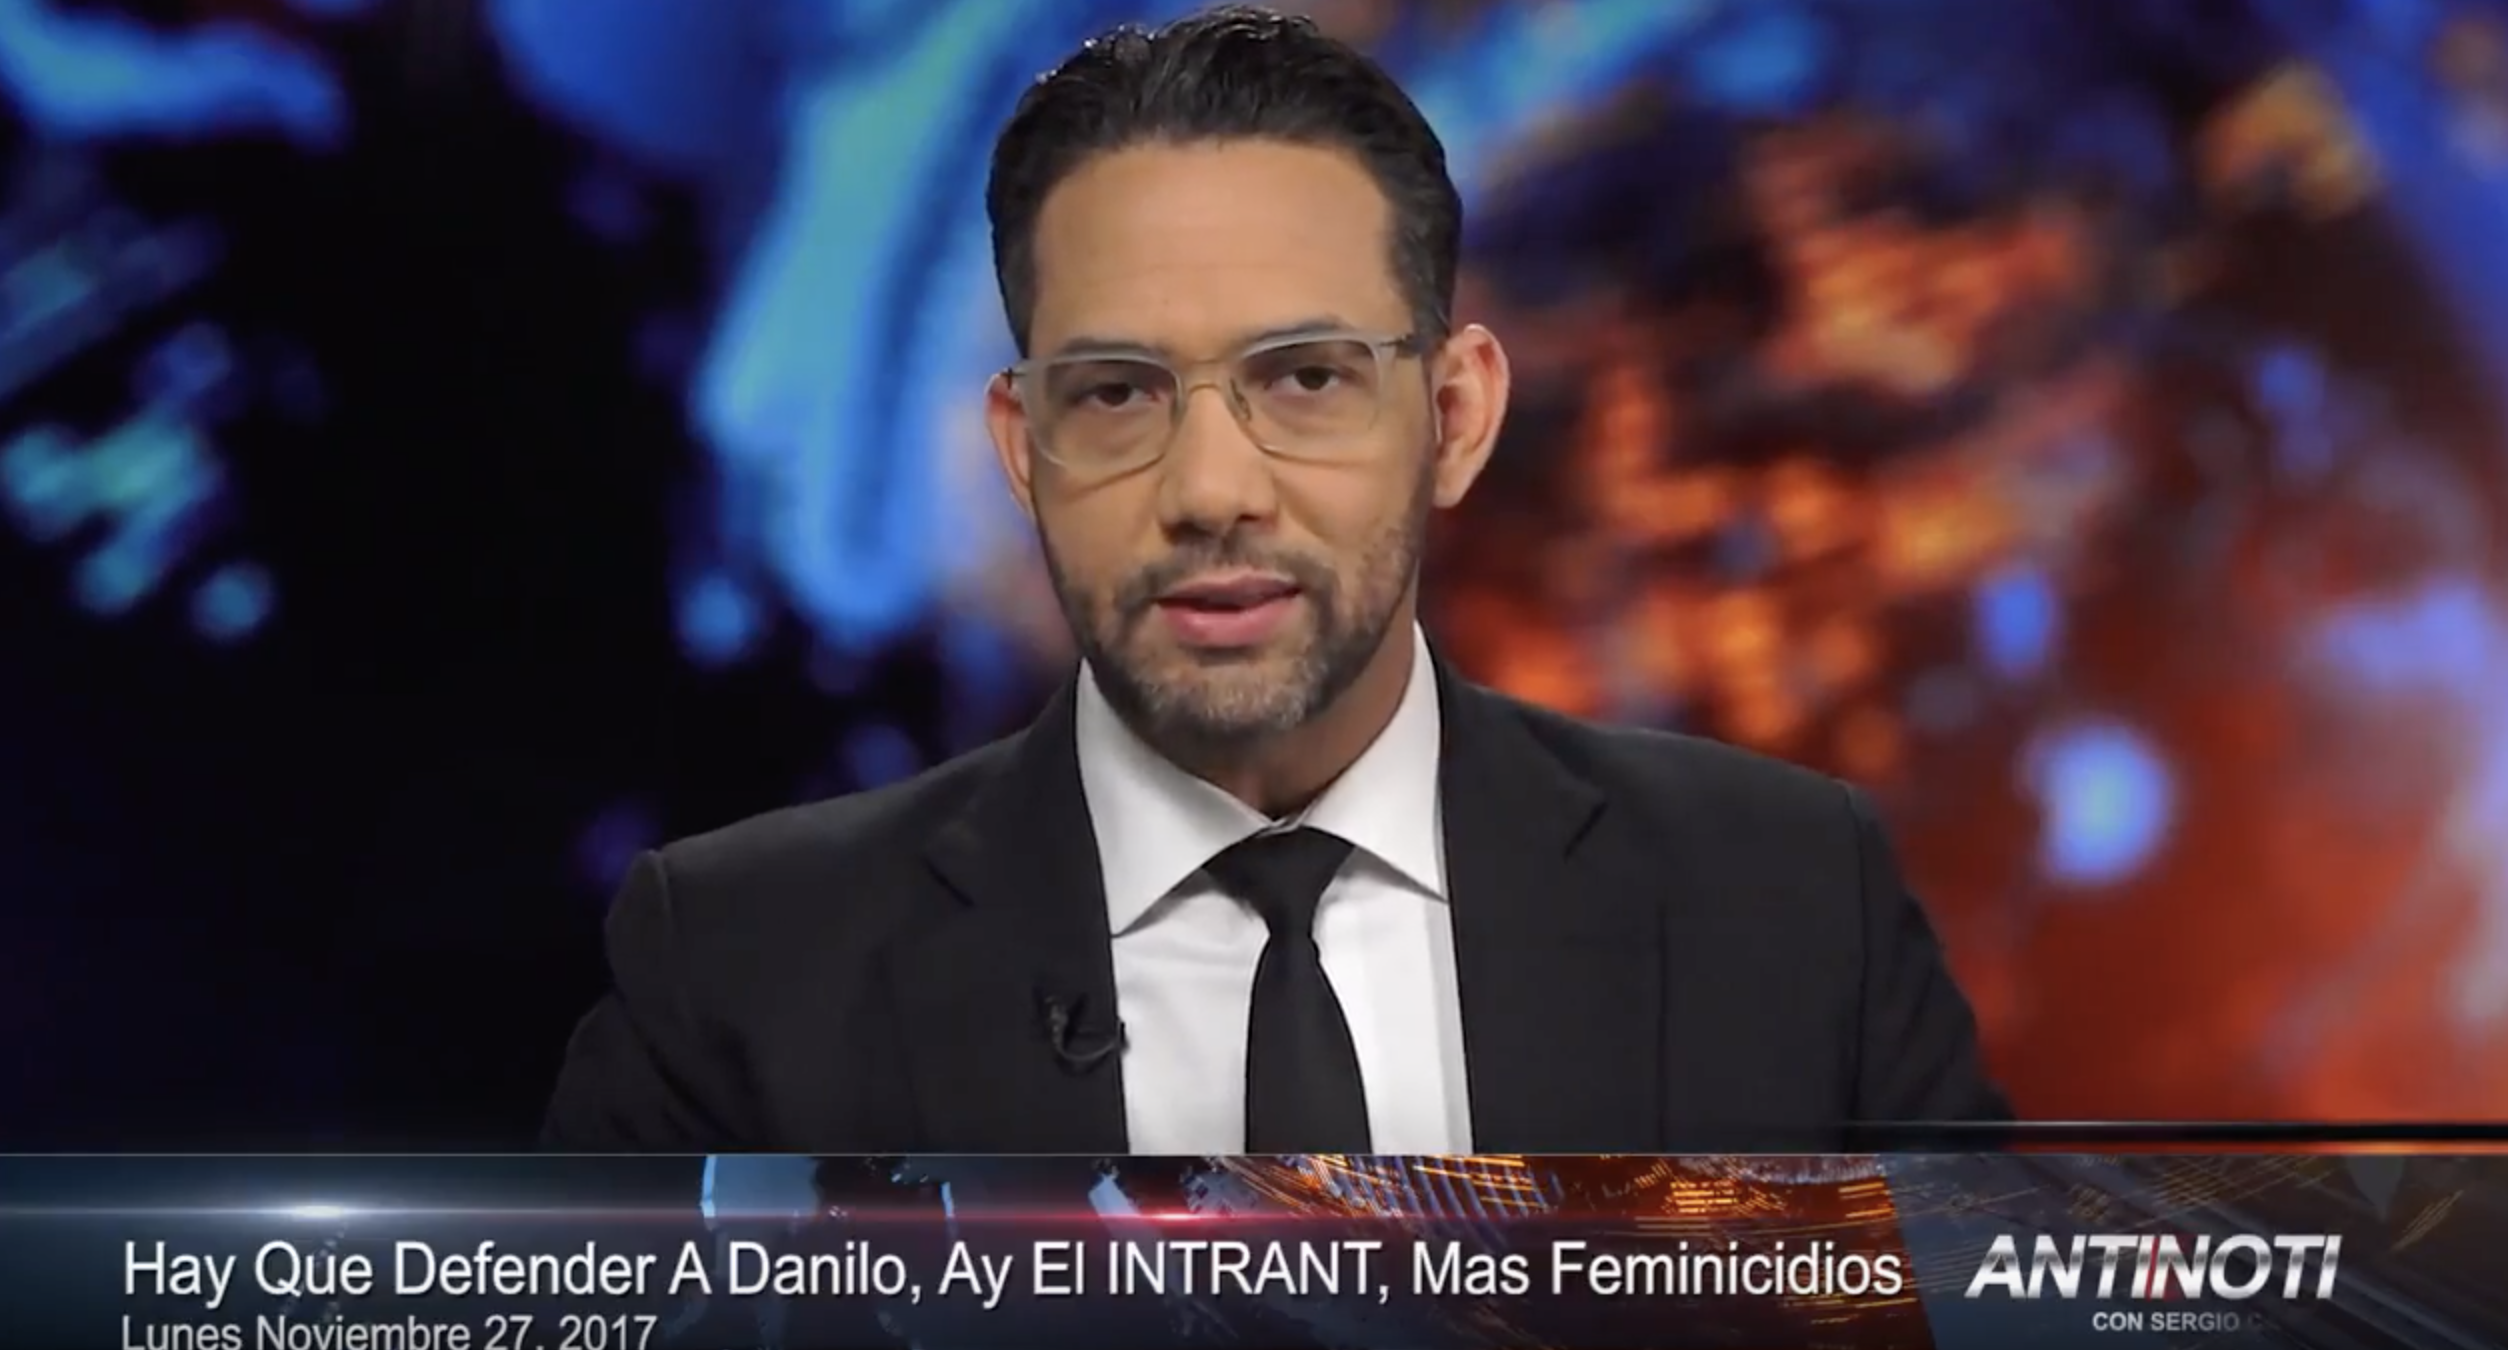 Defendiendo A Danilo – Ay El Intrant – Mas Feminicidios – #Antinoti Noviembre 27 2017